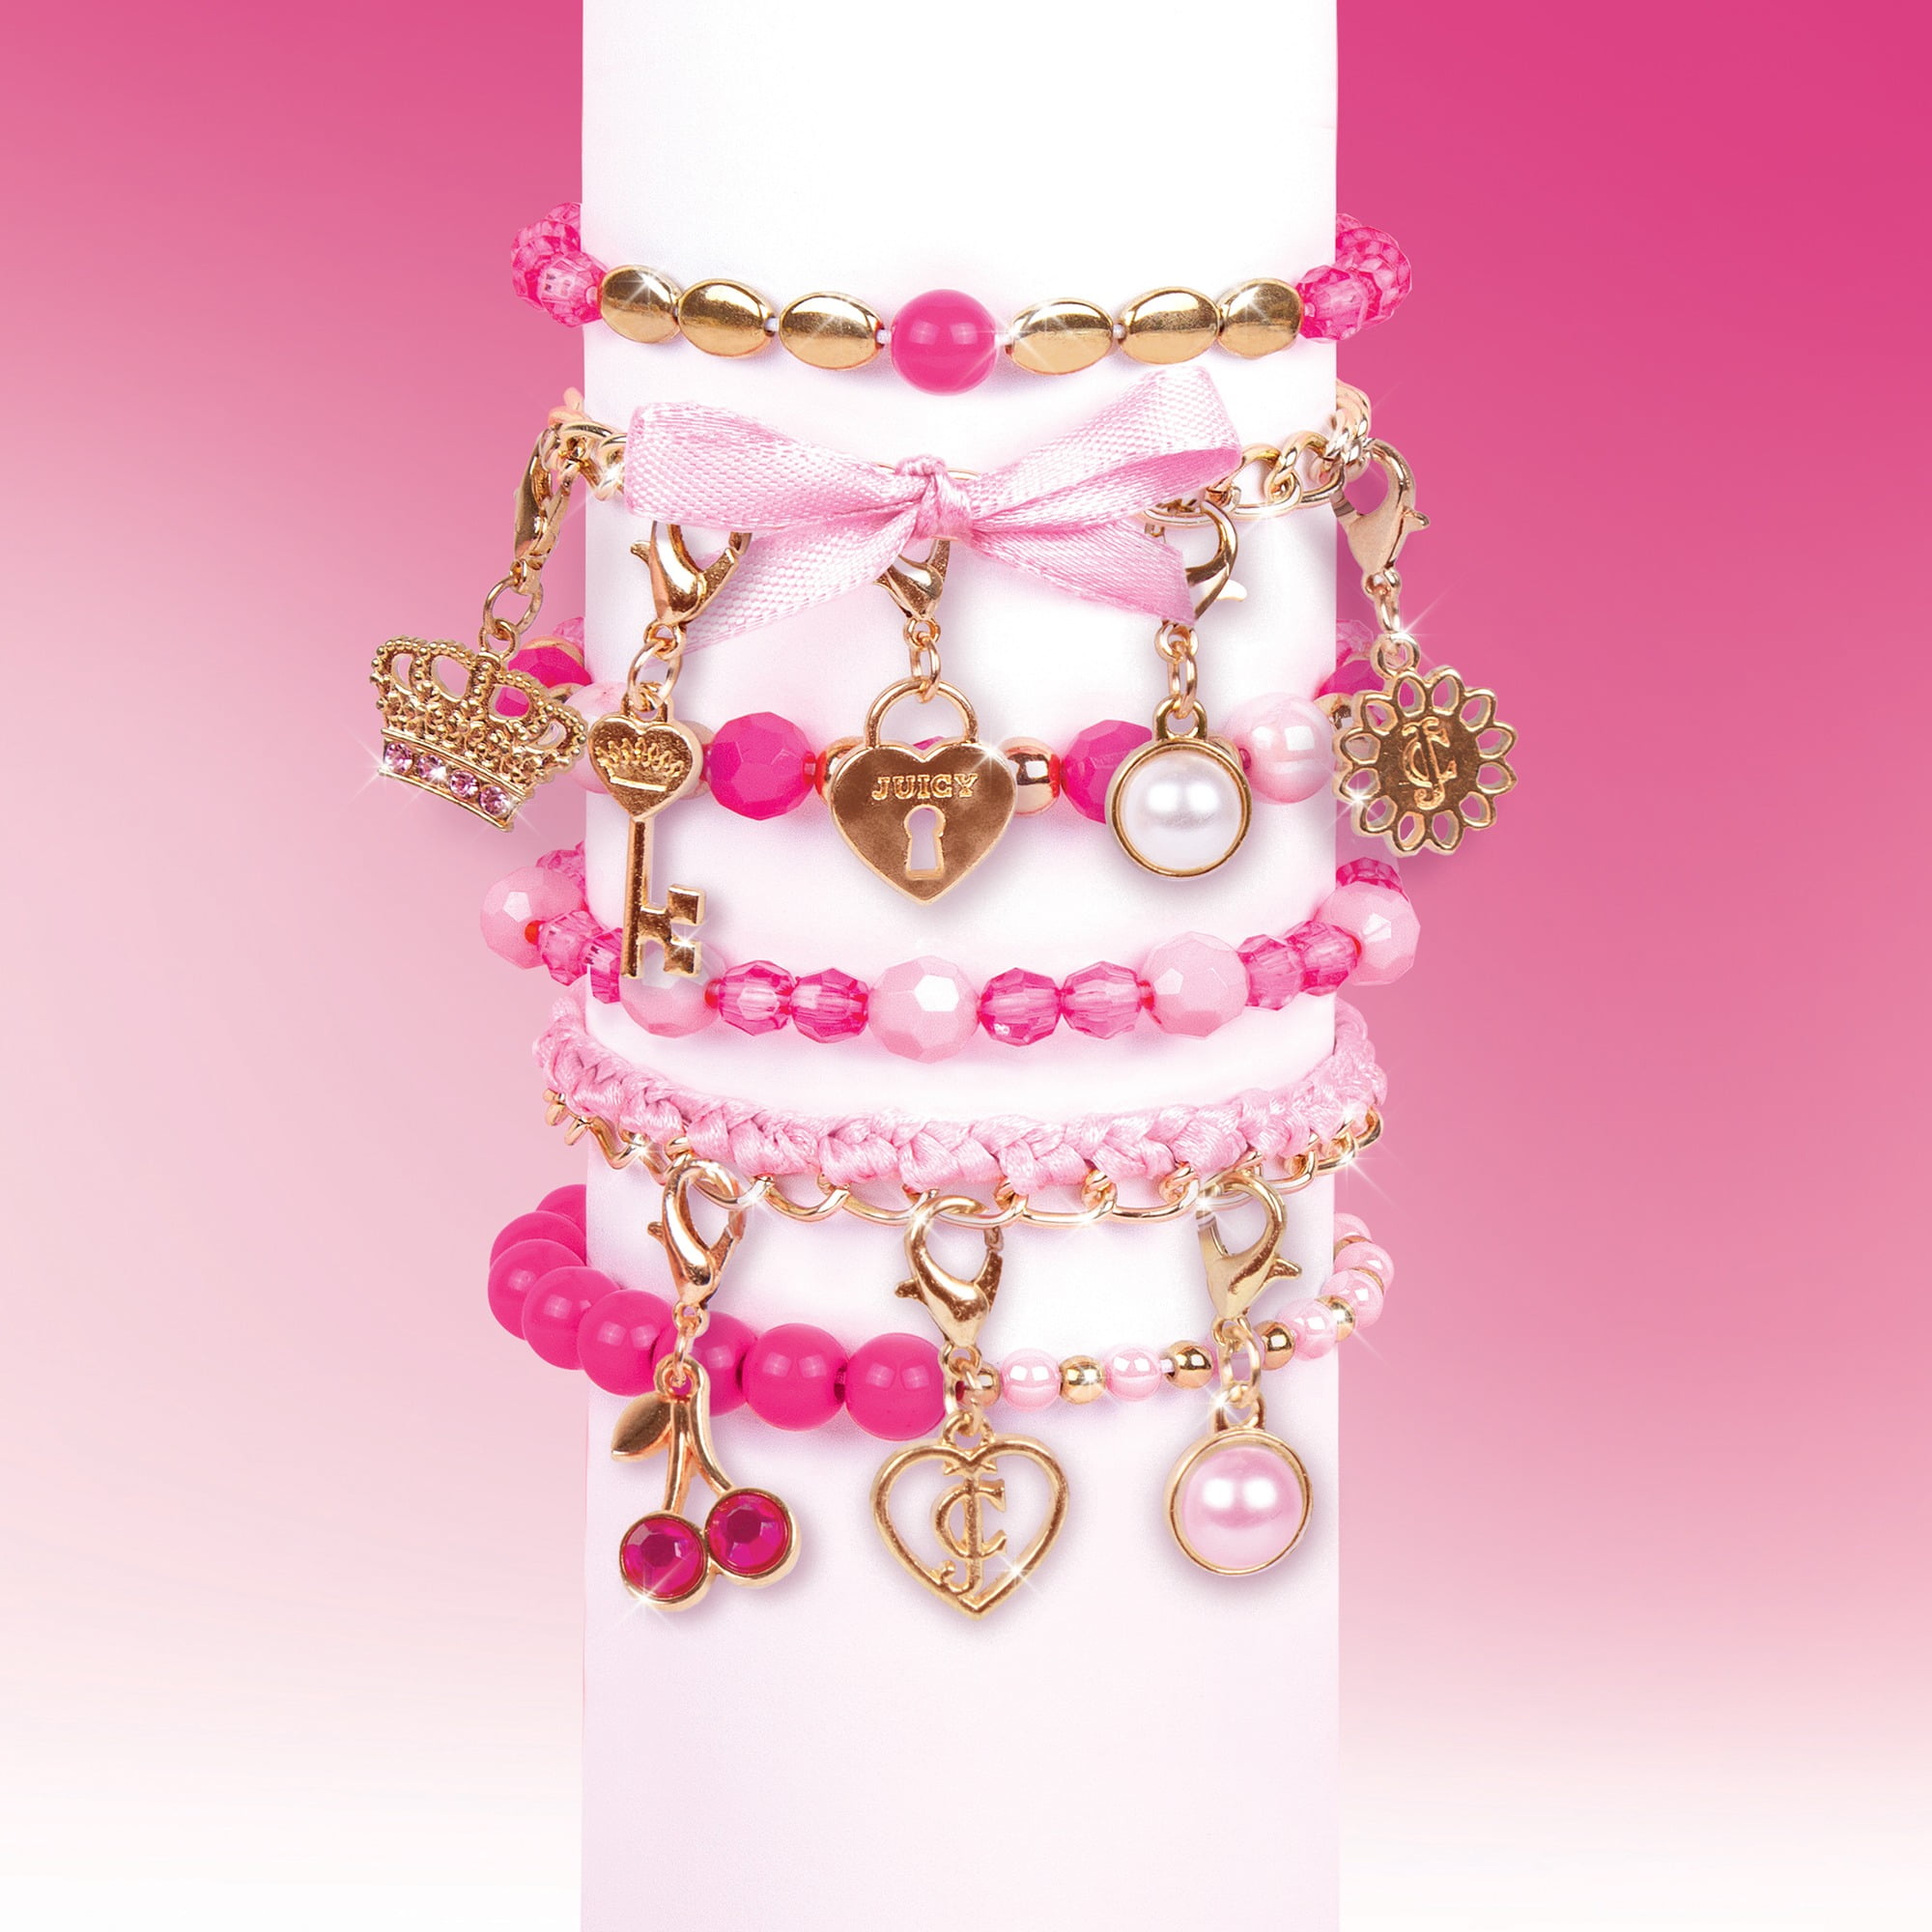 Juicy Bracelet | Juicy couture bracelet, Juicy couture jewelry, Jewelry